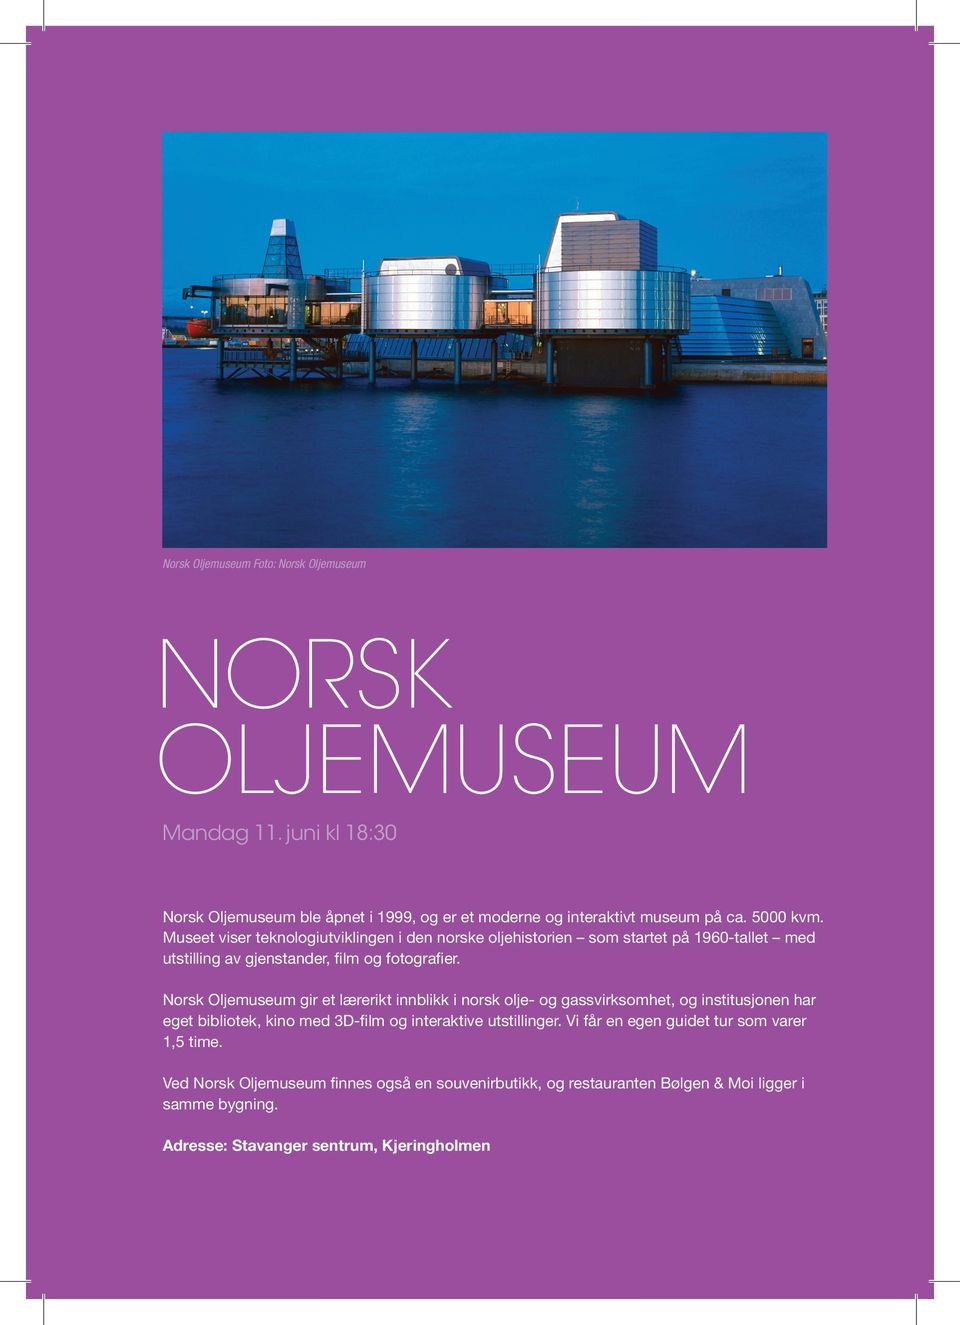 Norsk Oljemuseum gir et lærerikt innblikk i norsk olje- og gassvirksomhet, og institusjonen har eget bibliotek, kino med 3D-film og interaktive utstillinger.